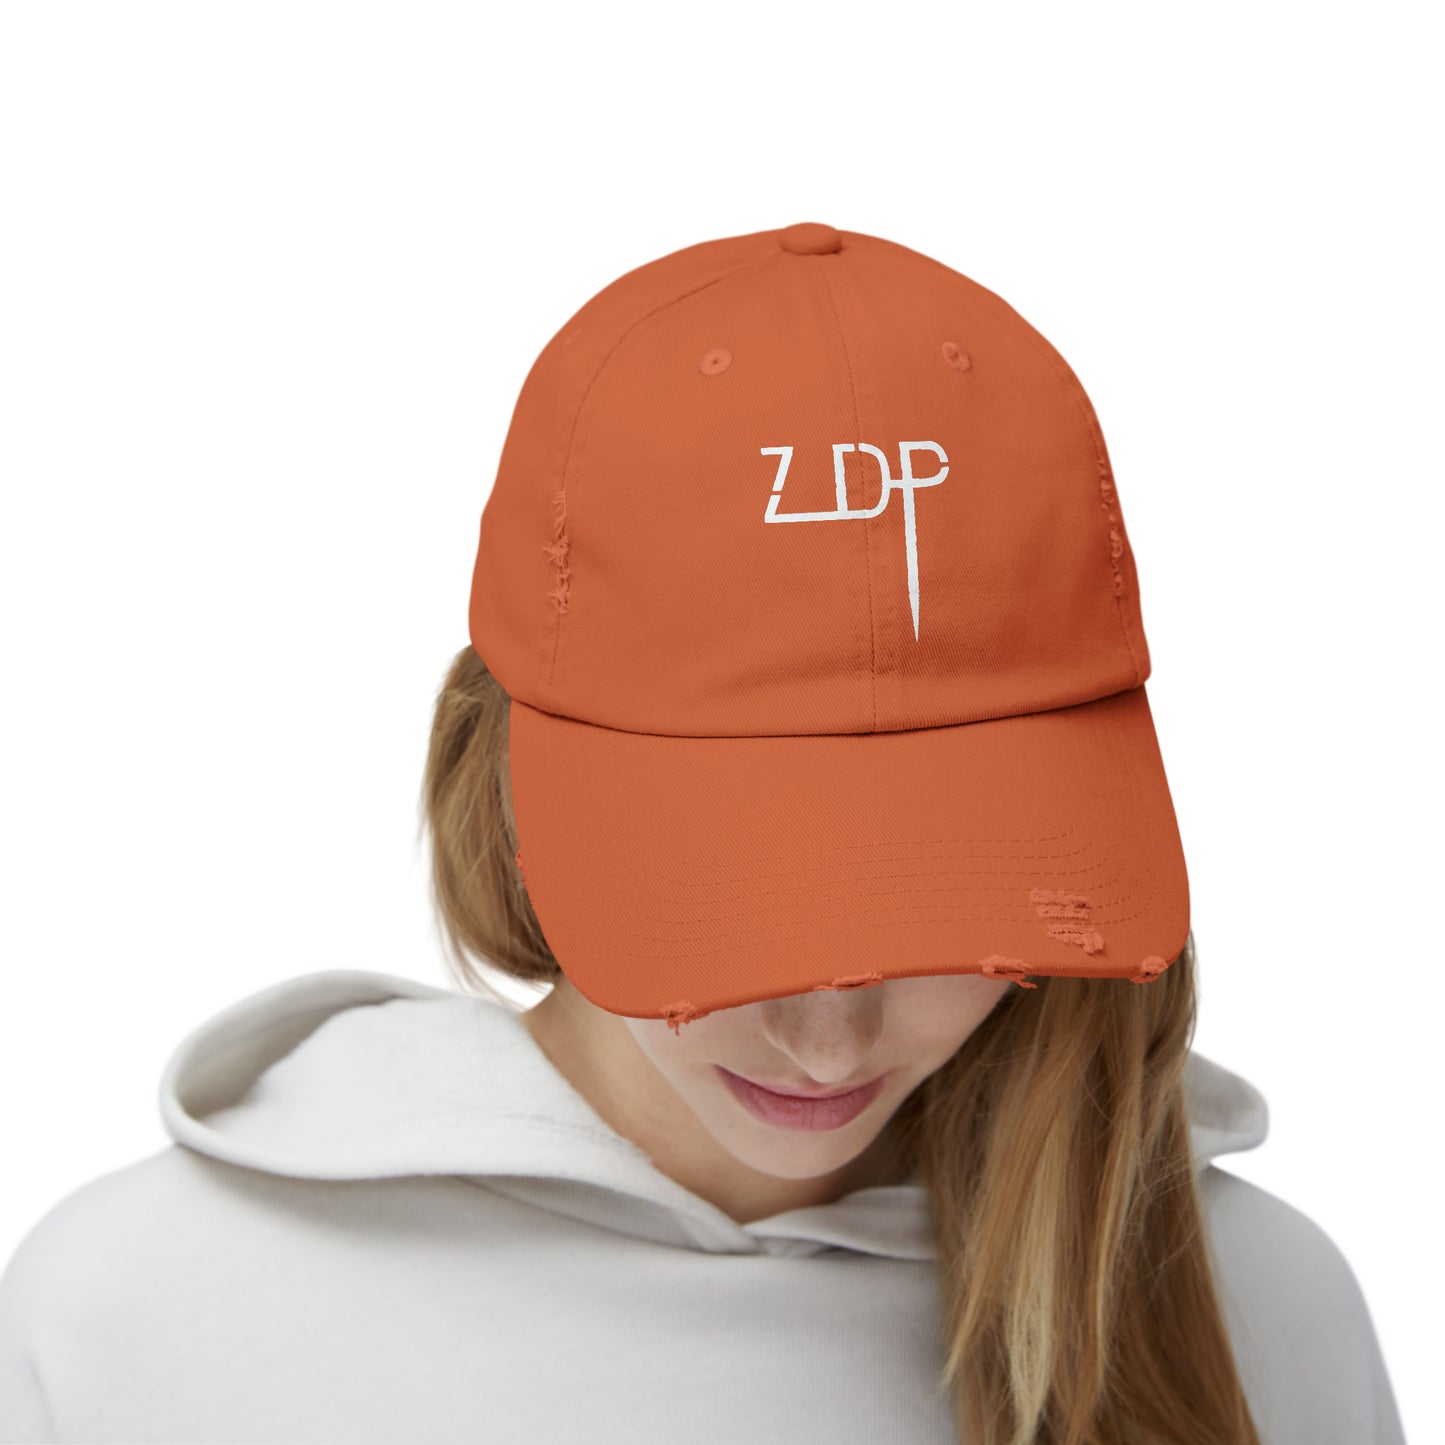 Zach D Productions ZDP Logo Unisex Distressed Cap